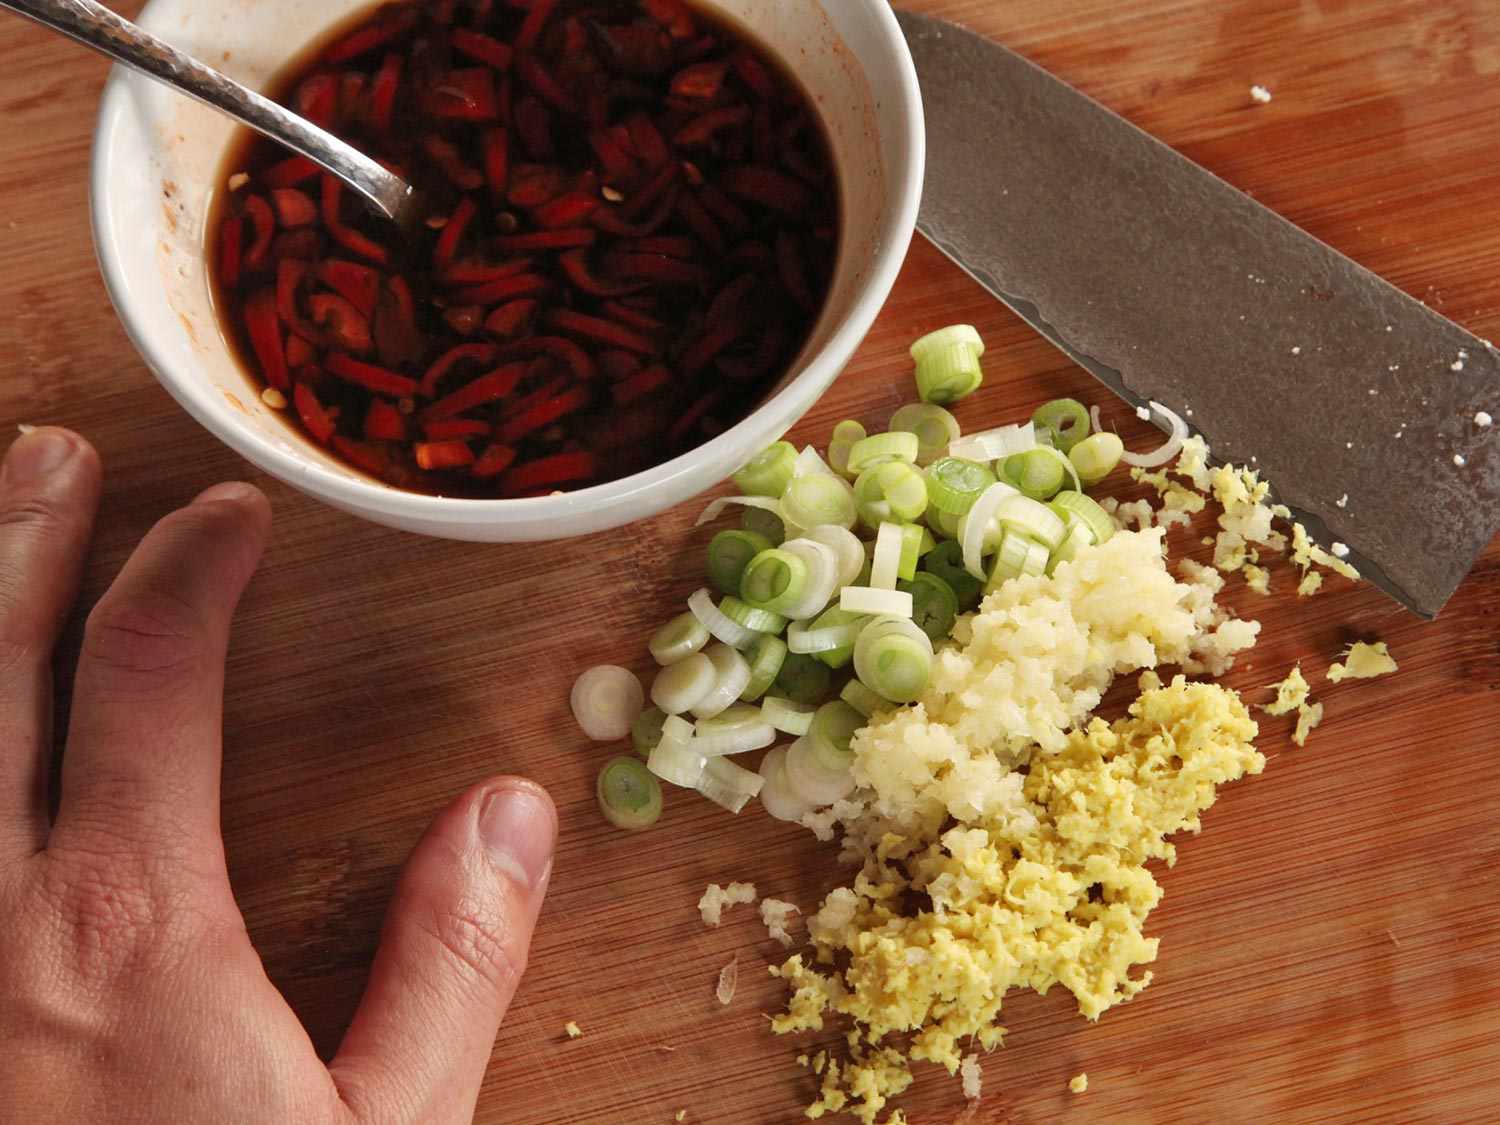 把泡椒和豆瓣酱放在一个准备碗里，旁边放上葱花、蒜末和姜末。